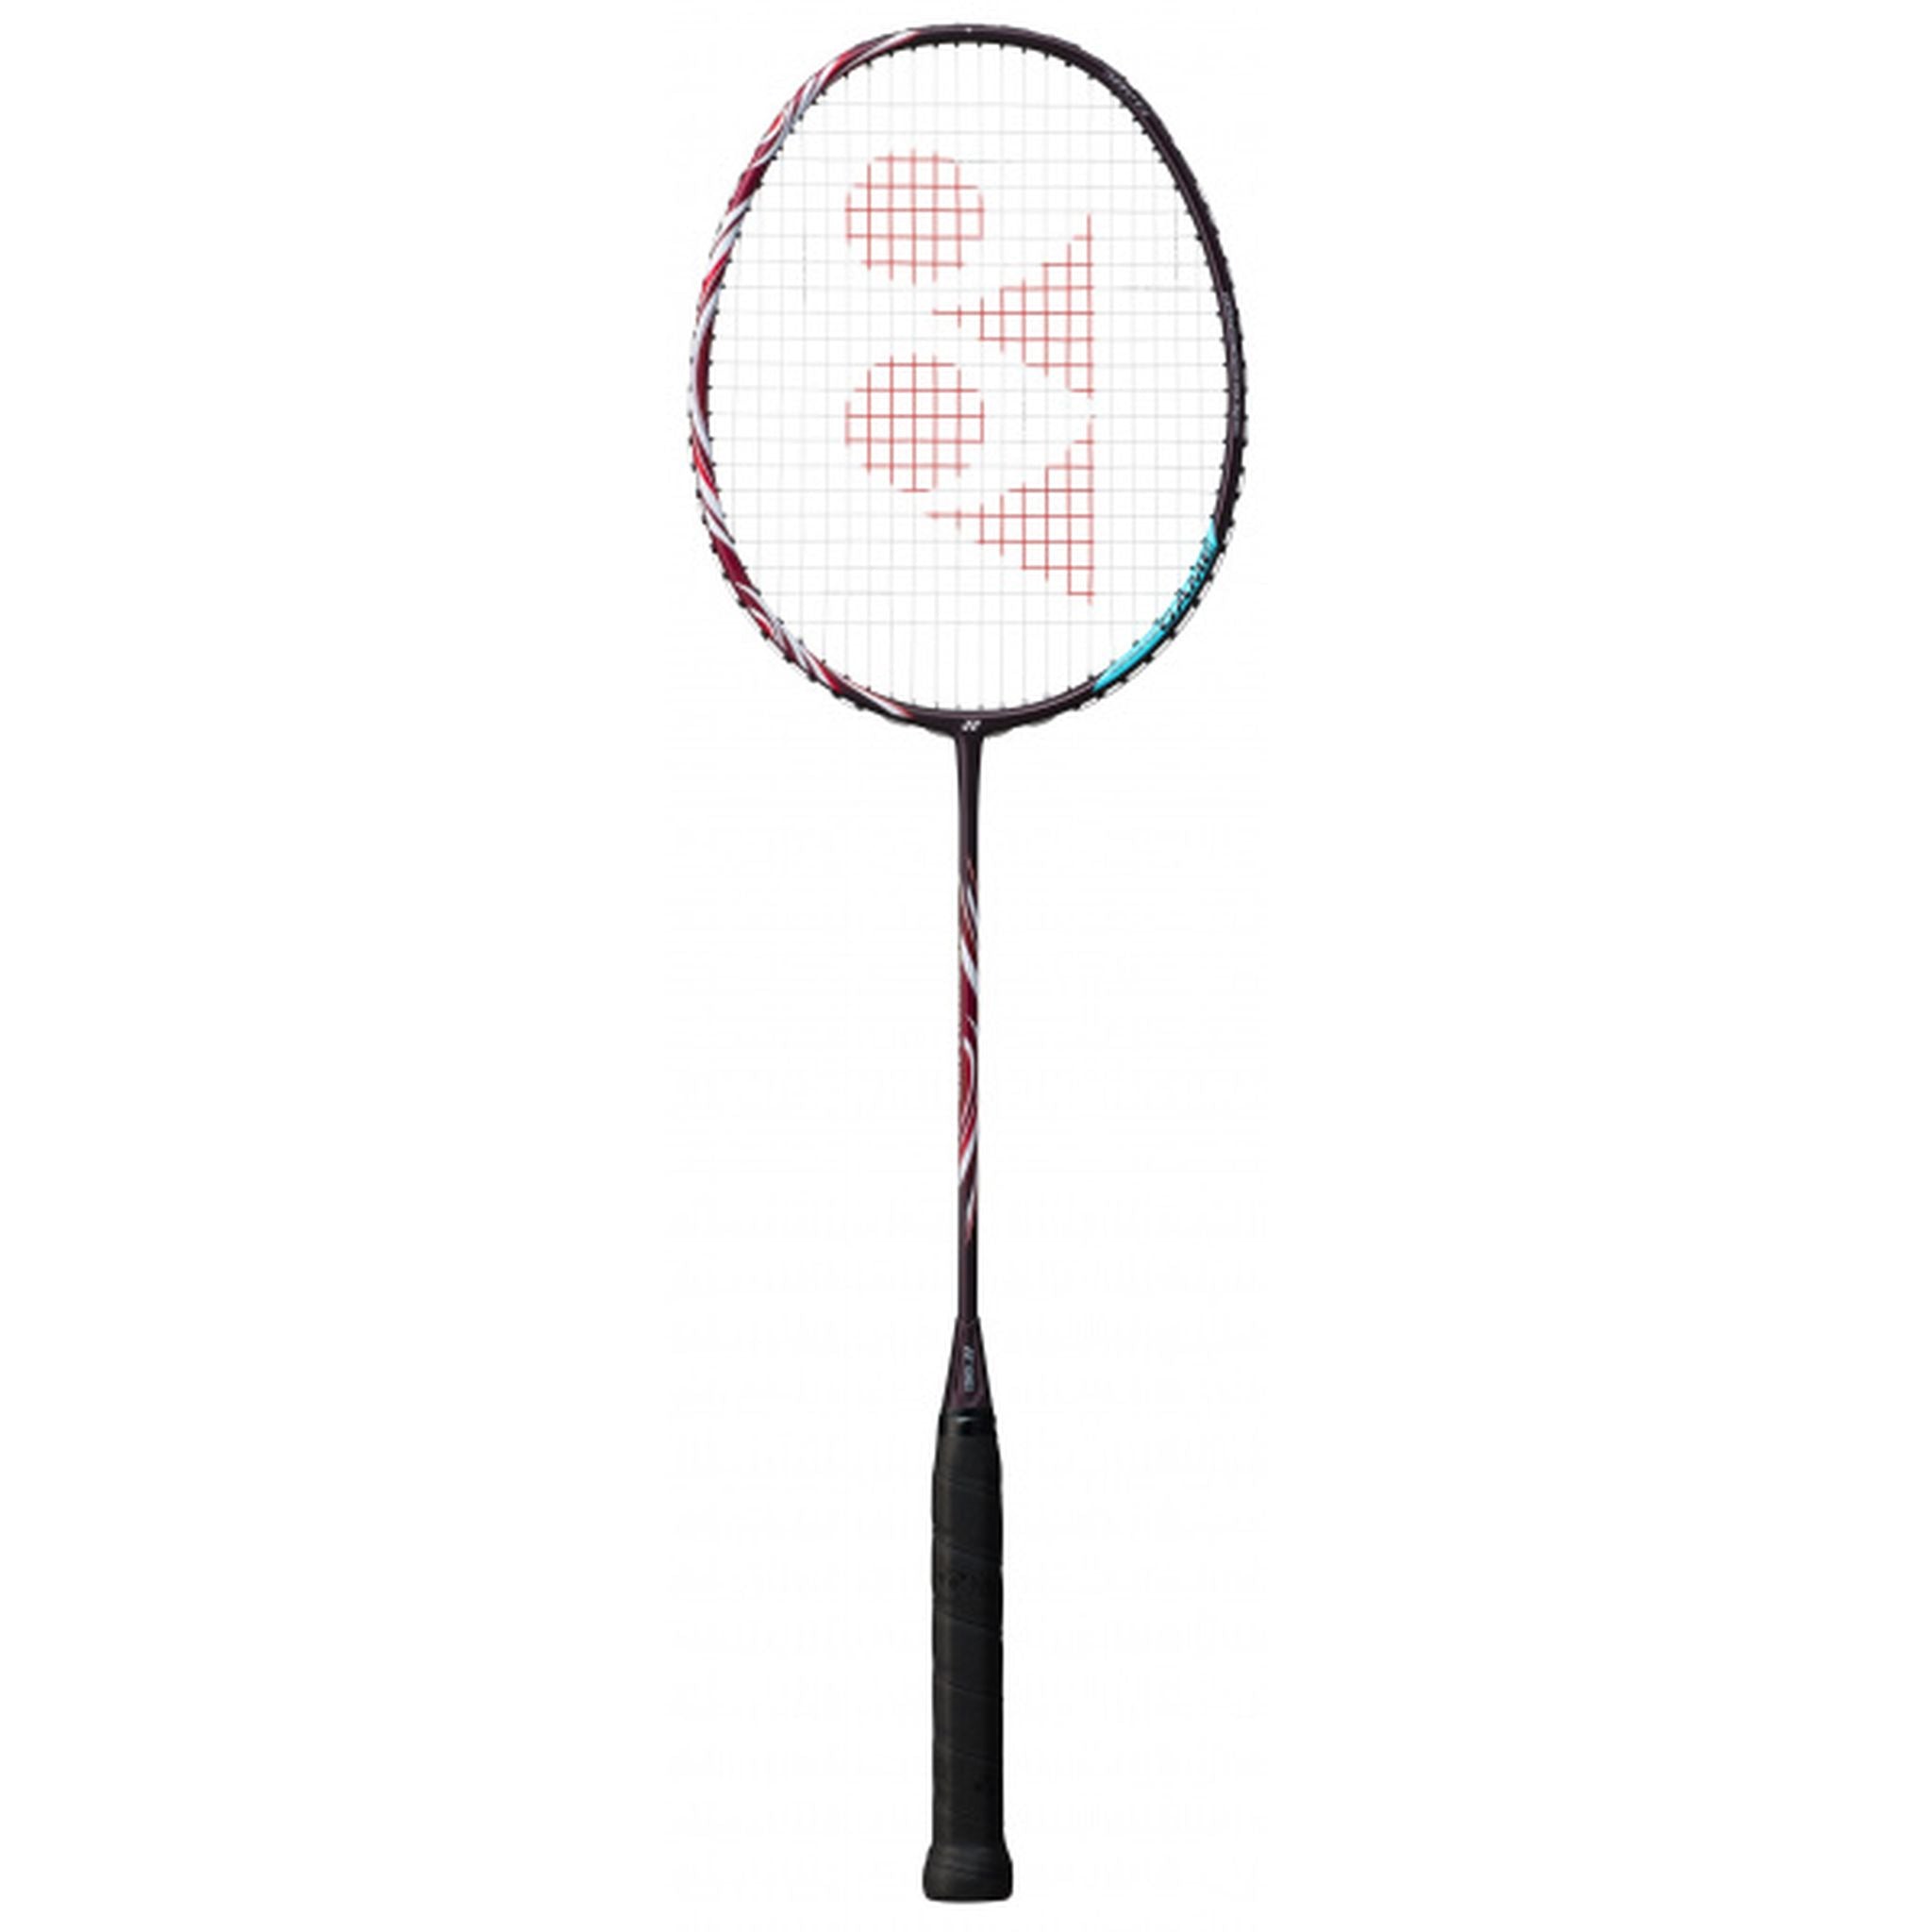 Yonex Astrox 100 Game Badminton Racquet